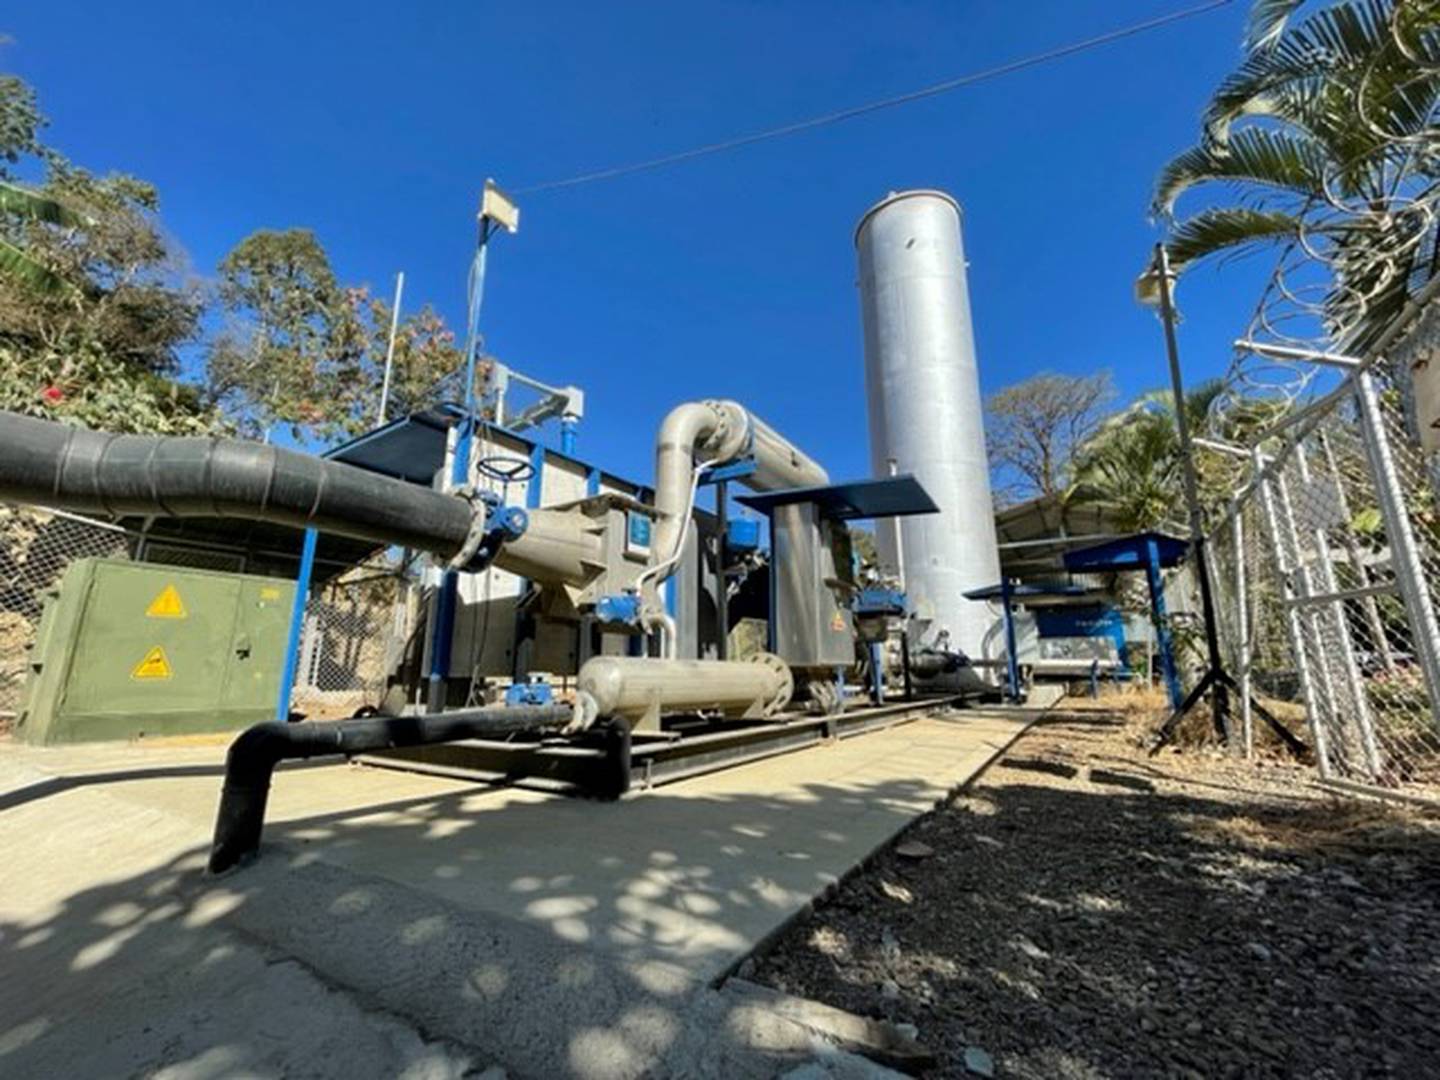 En el parque de tecnología ambiental La Uruka, en La Carpio, hay un sistema activo del biogás (gas resultante de la descomposición de la materia orgánica de los residuos sólidos).

Fotografía: EBI